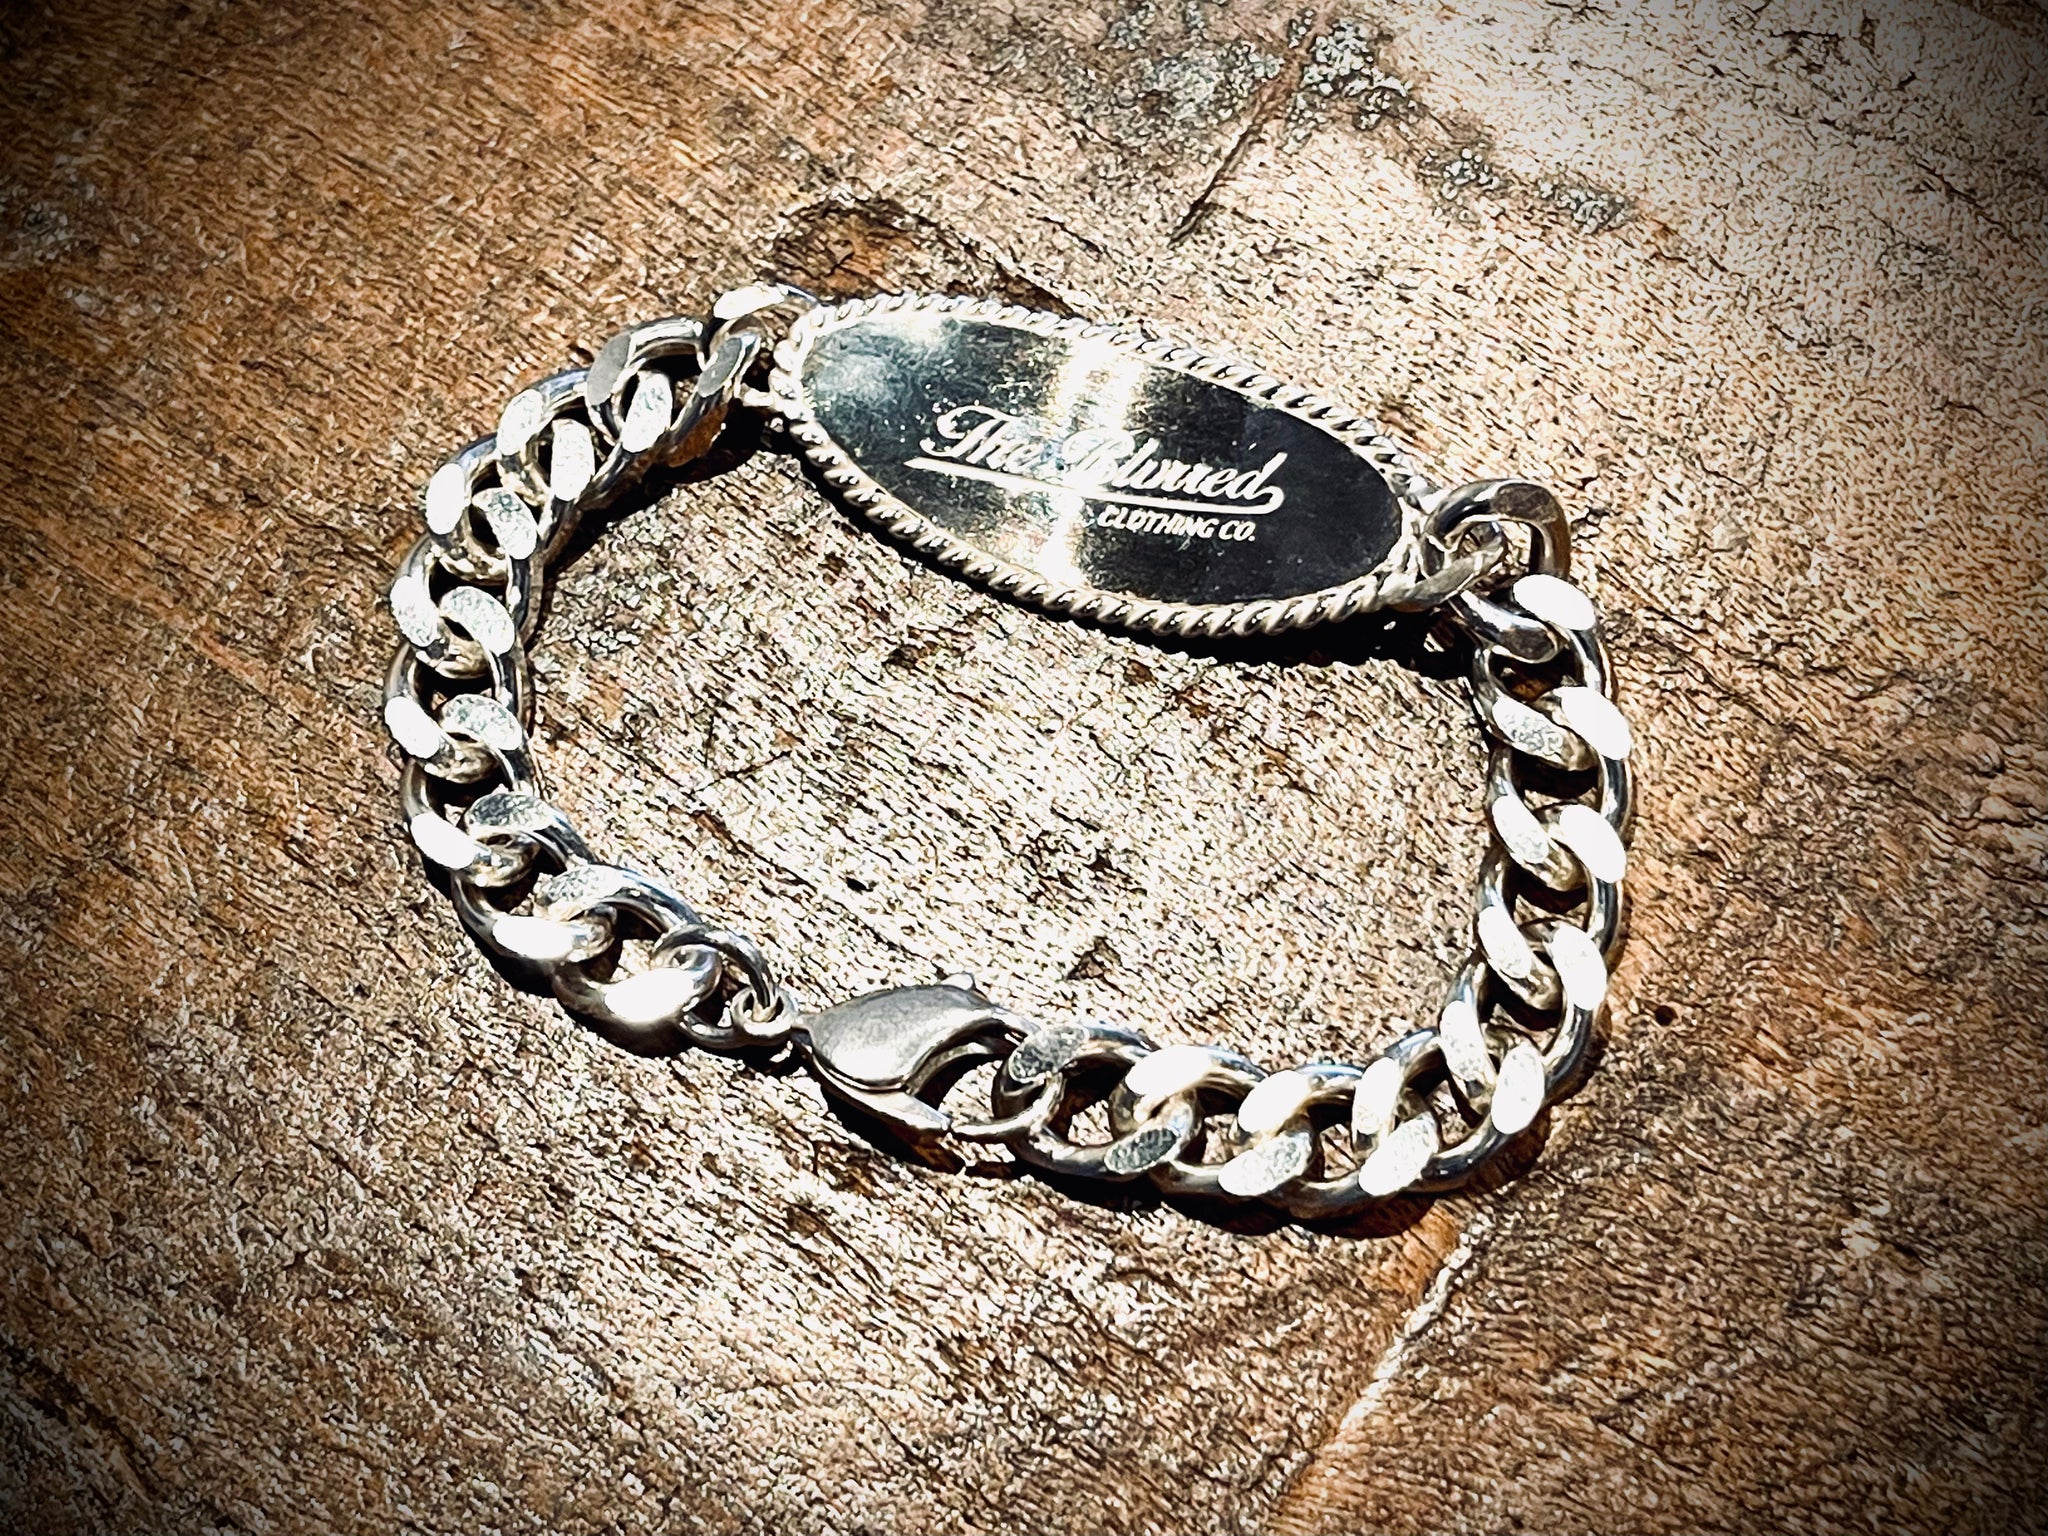 silver925 ID bracelet